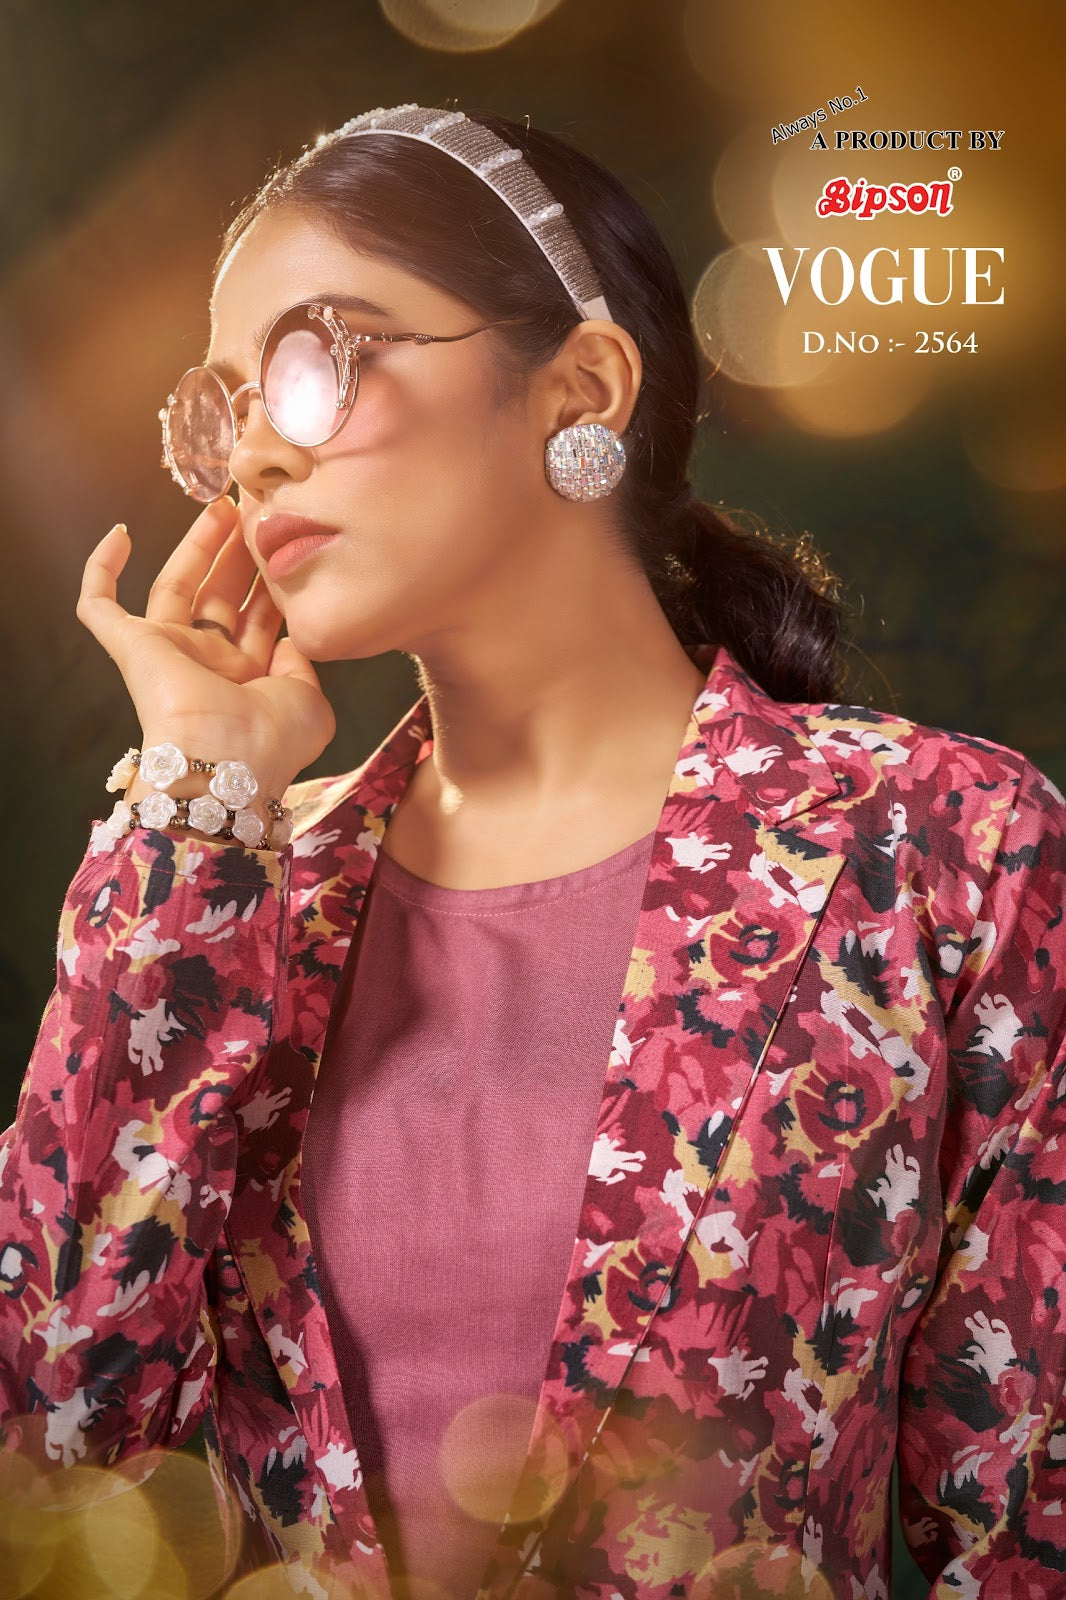 Vogue 2564 Bipson Prints Modal Chanderi Co Ord Set